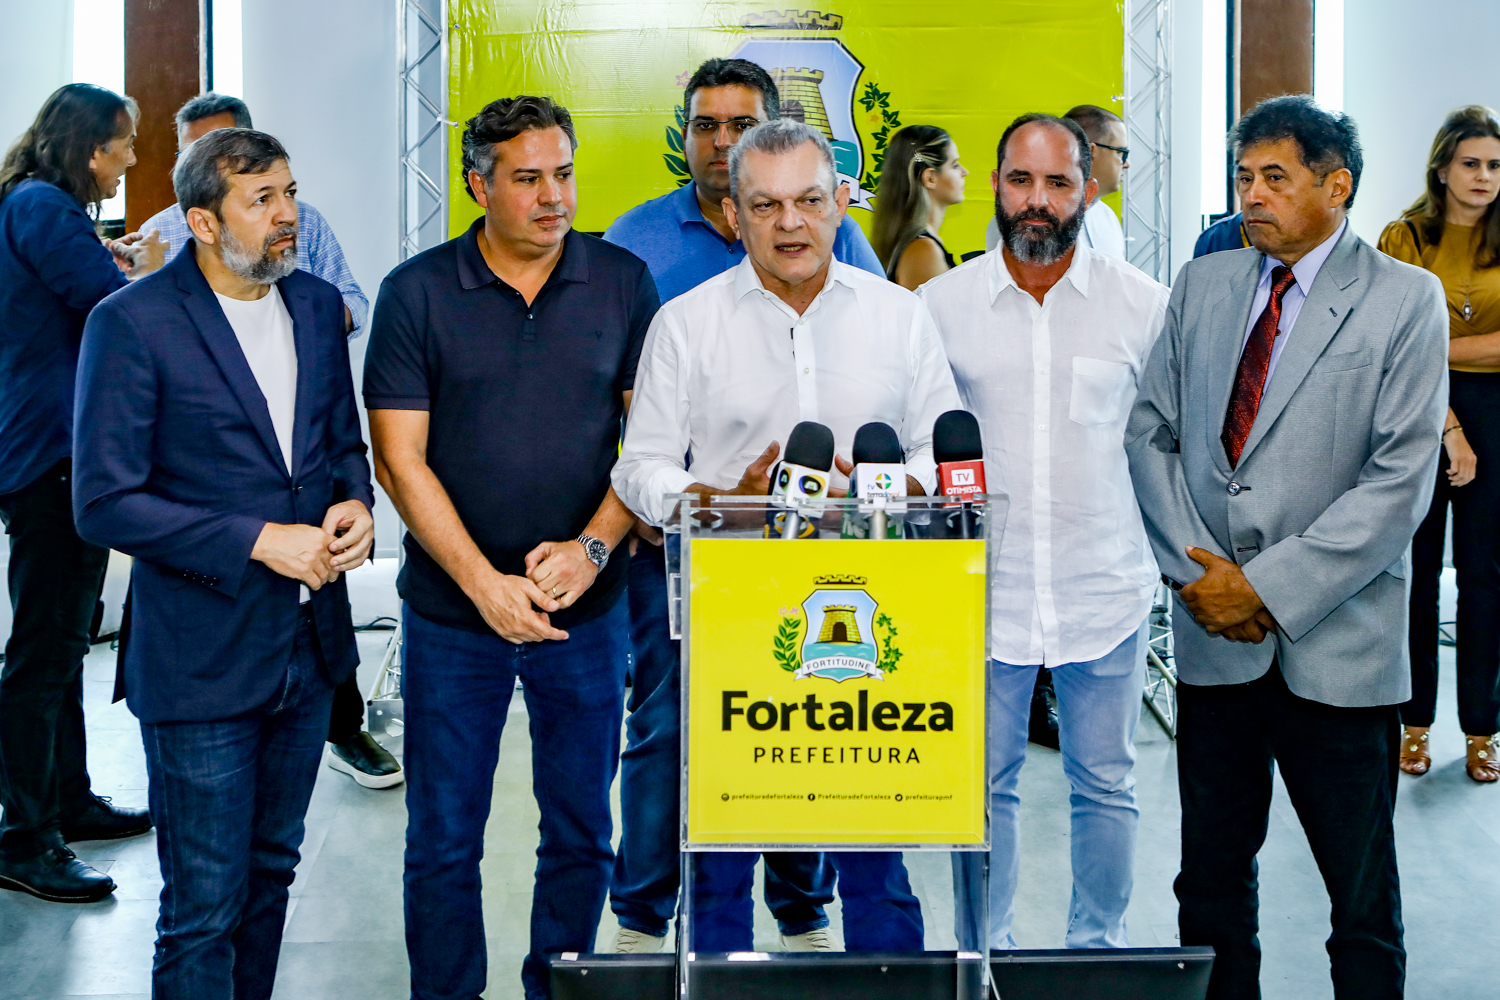 Prefeitura de Fortaleza apresenta projeto de requalificação da Praia de Iracema